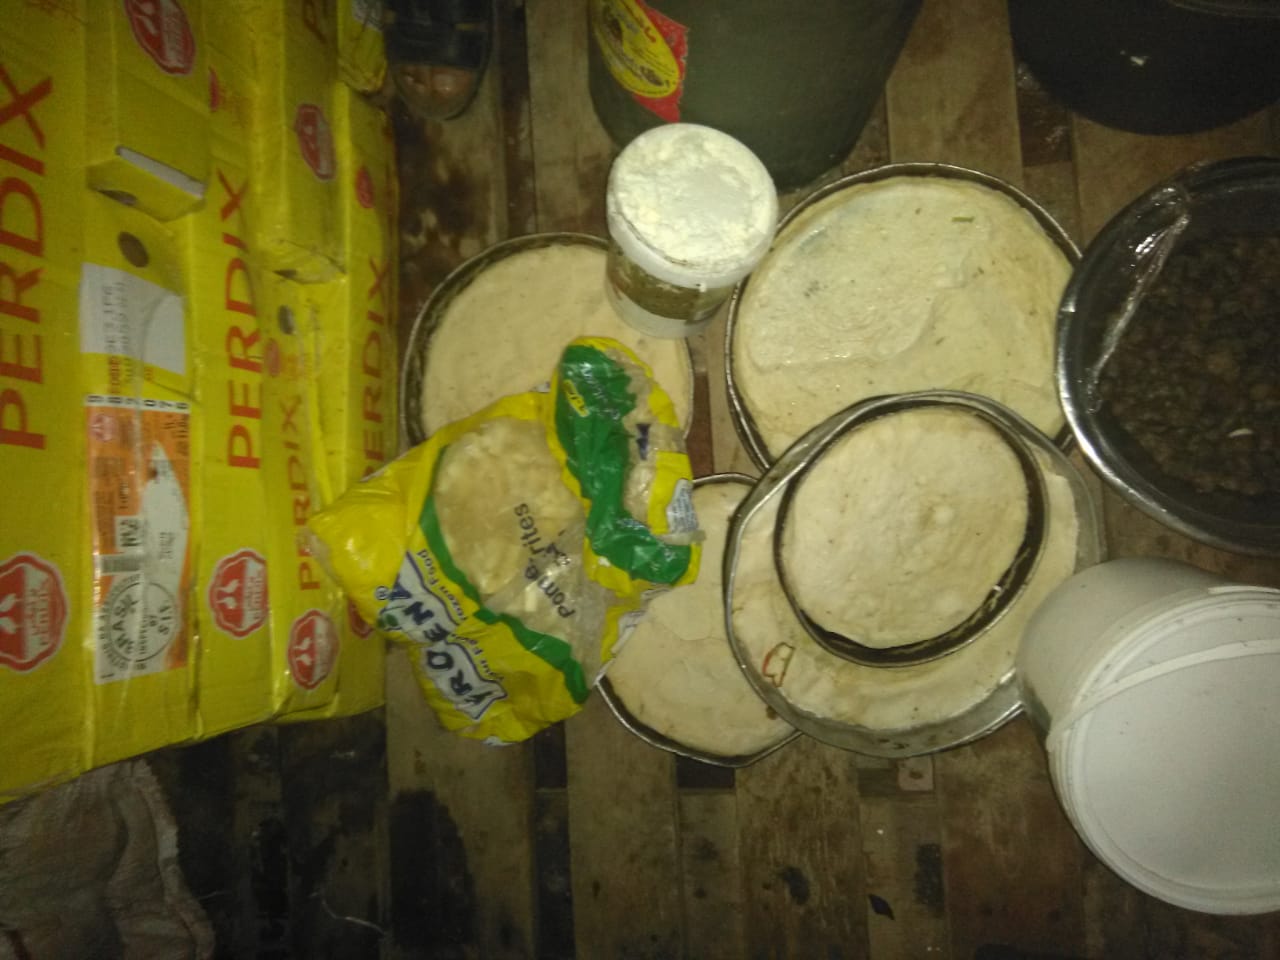 ضبط أغذية غير صالحة للاستهلاك الآدمي في بعض المطاعم بمدينة مرسى مطروح  (2)